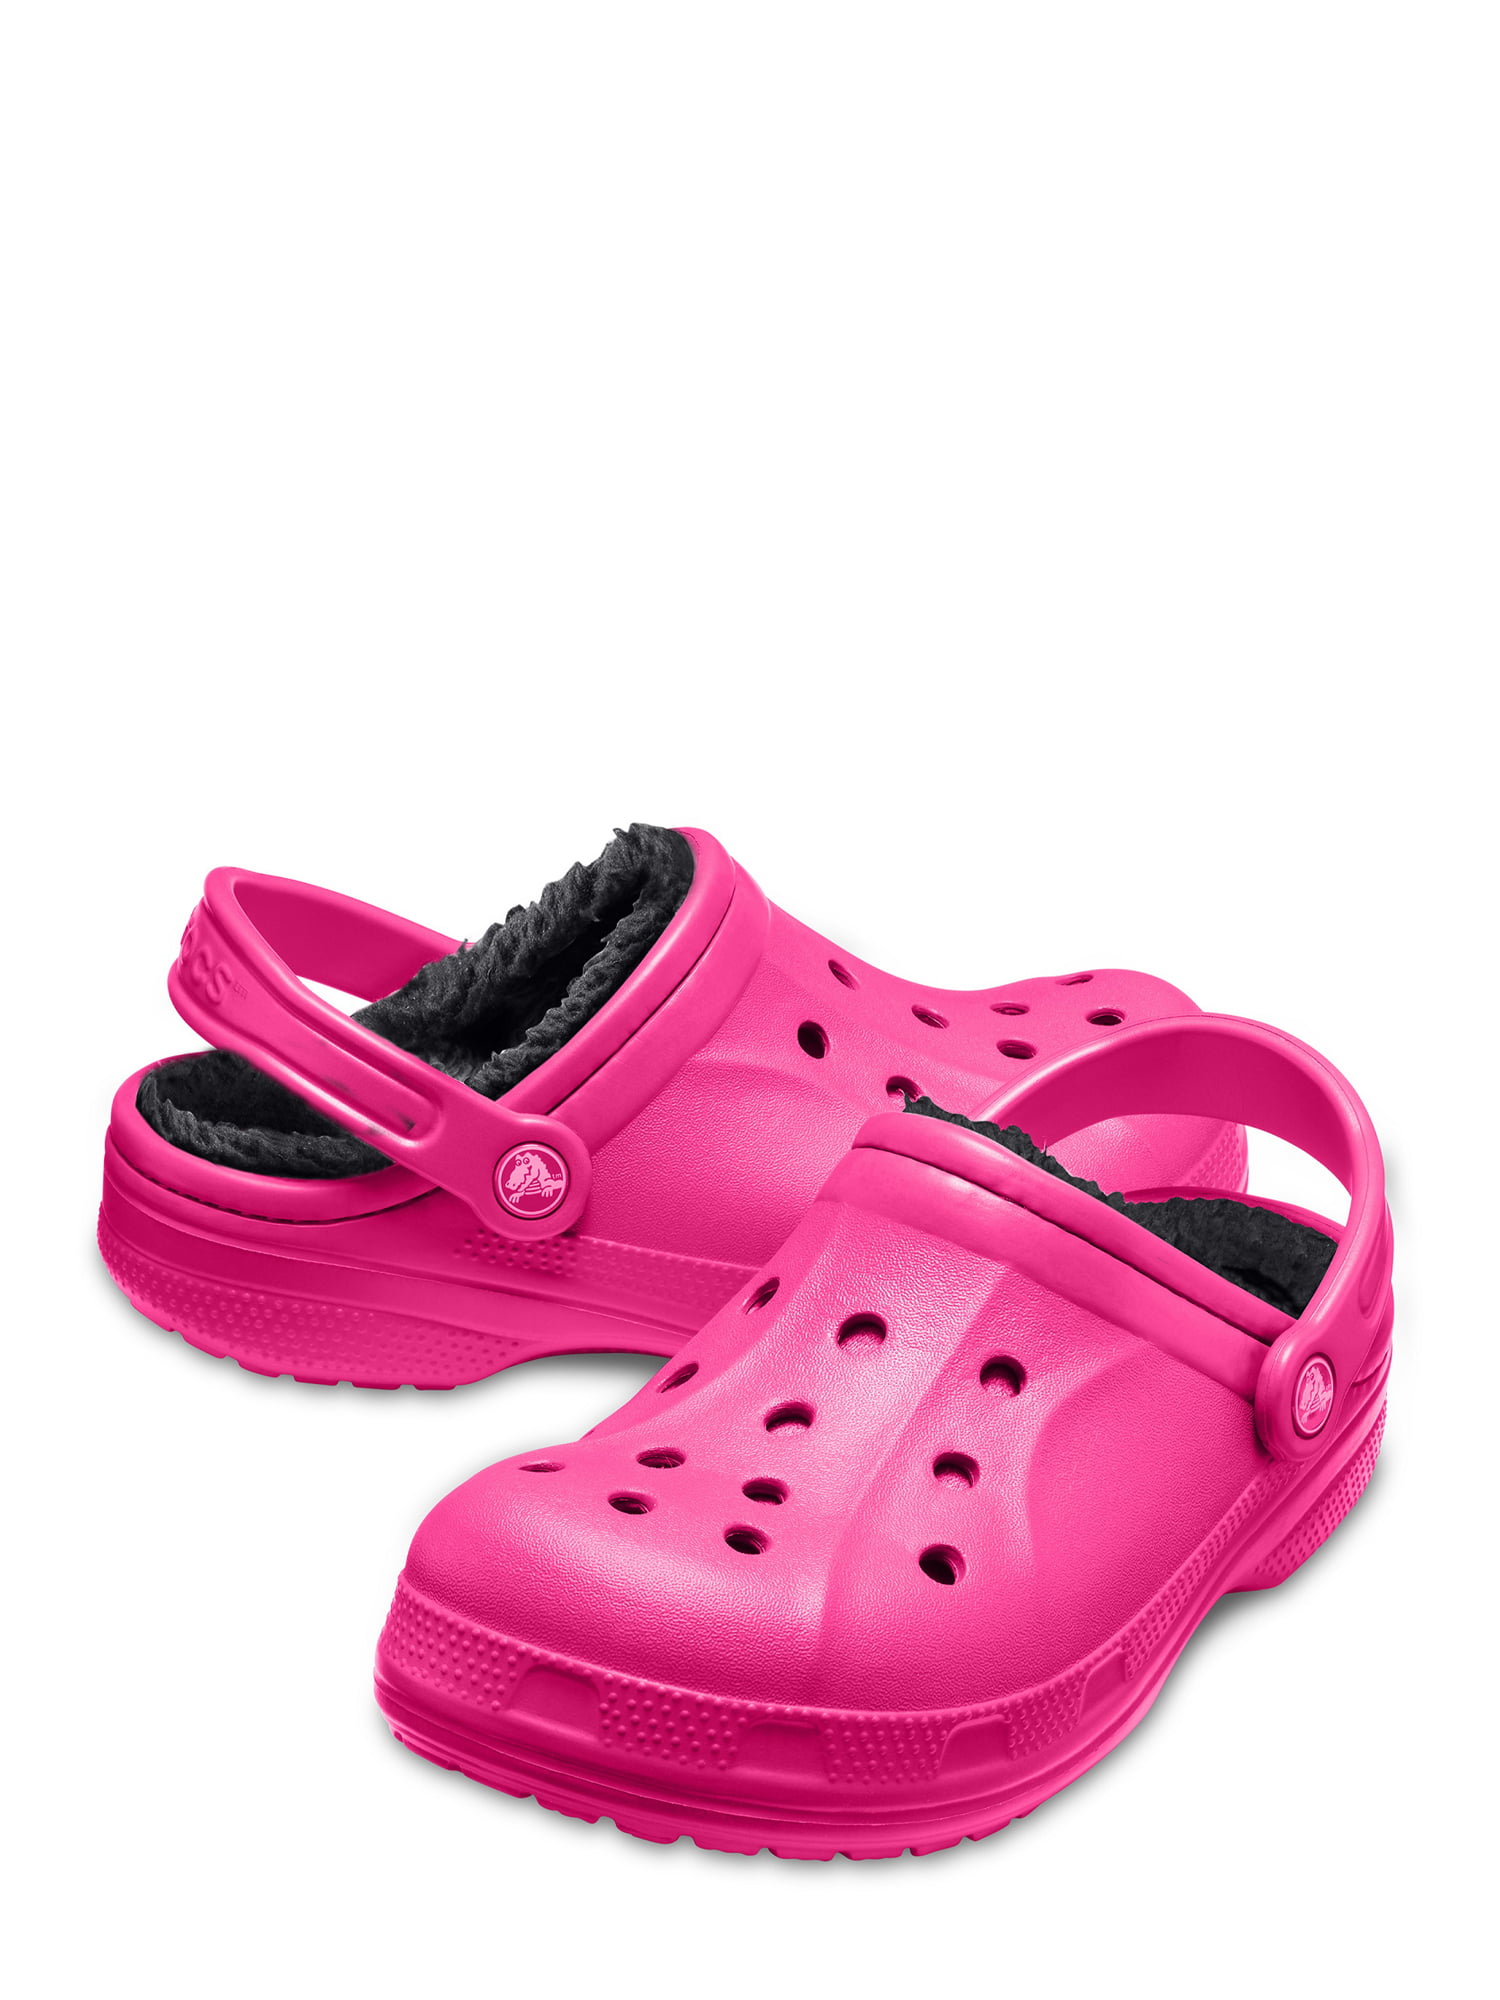 hot pink fur crocs